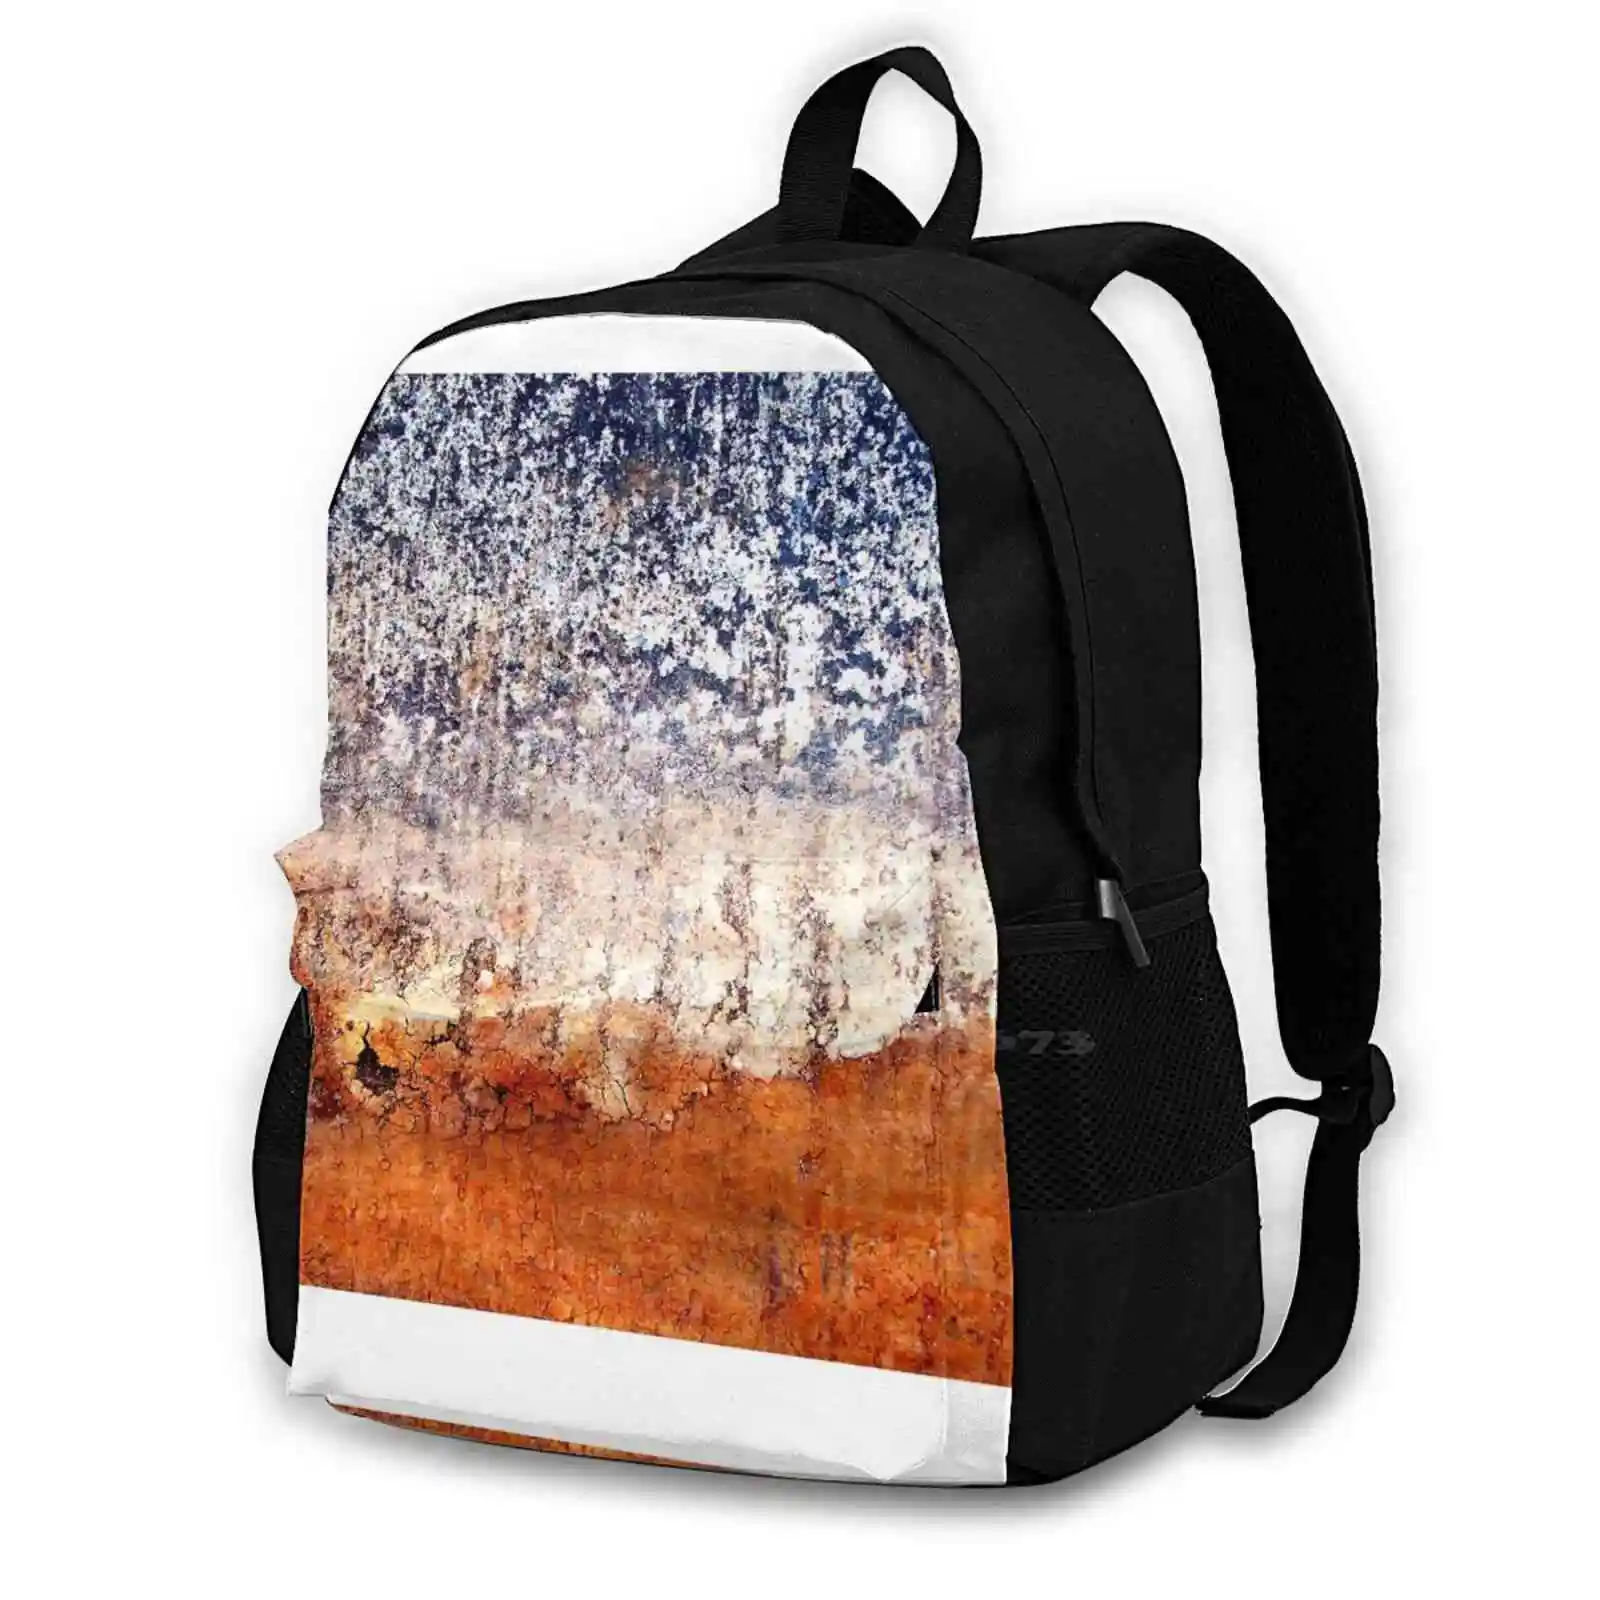 Школьная сумка Desert Dawn, рюкзак для ноутбука большой емкости, 15-дюймовые текстуры серии Micro, поцарапанные из-за эрозии окружающей среды, художественные